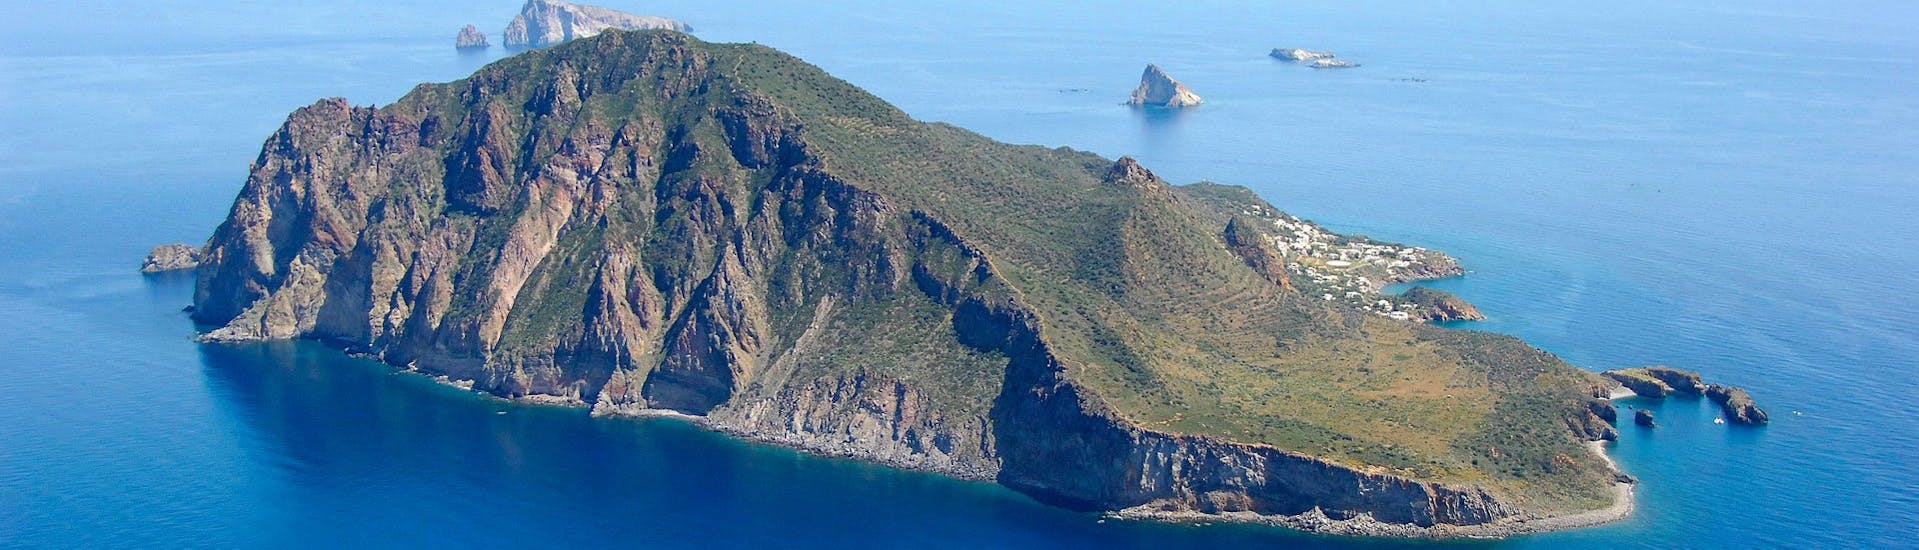 Foto dell'isola di Panarea.